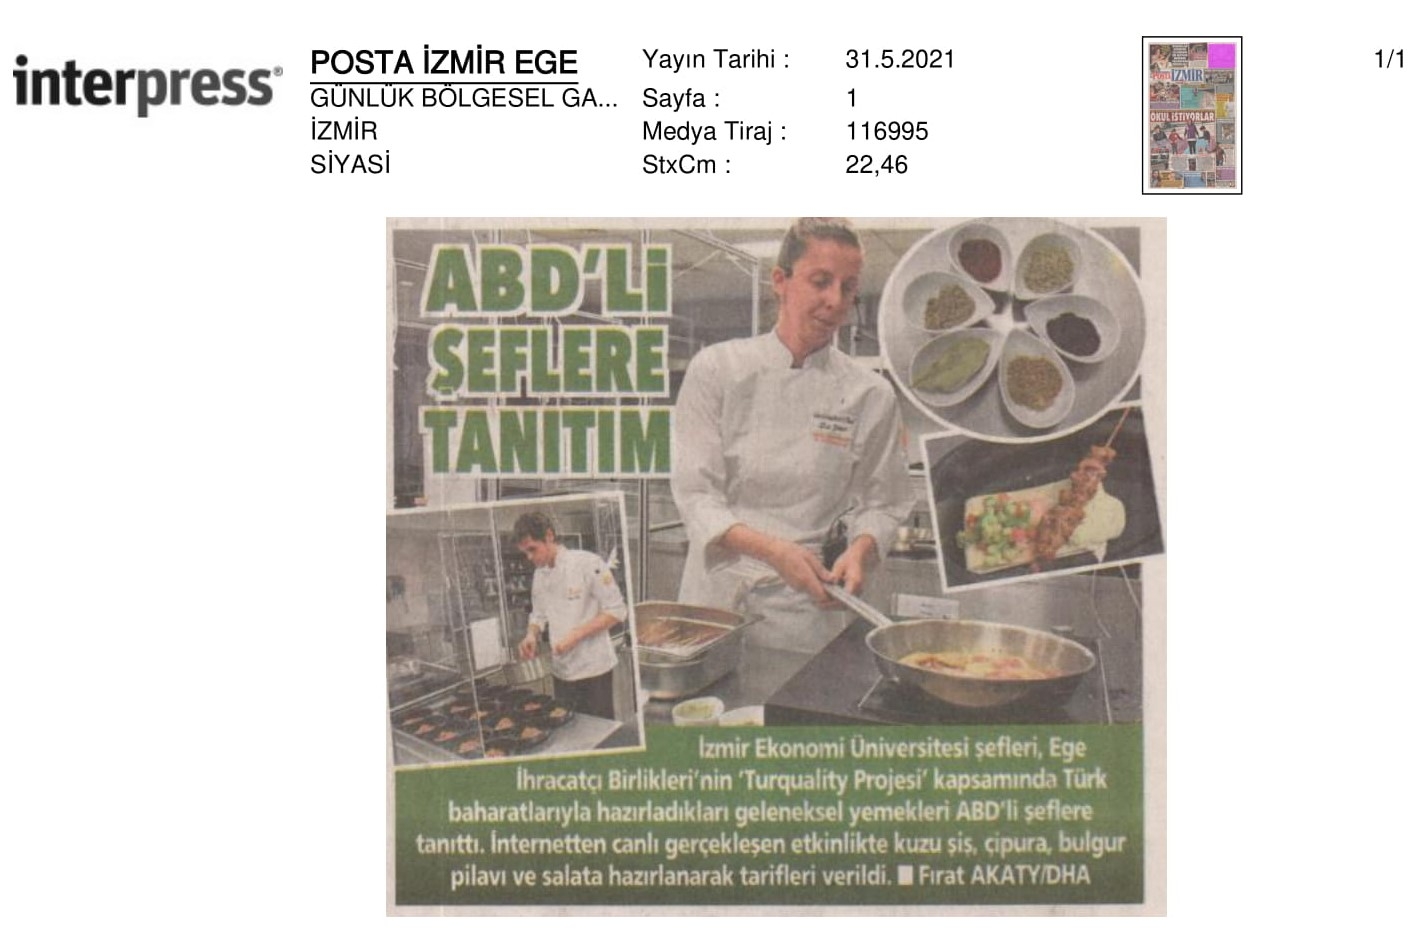 ABD’ye canlı yayında ‘Türk mutfağı’ dersi